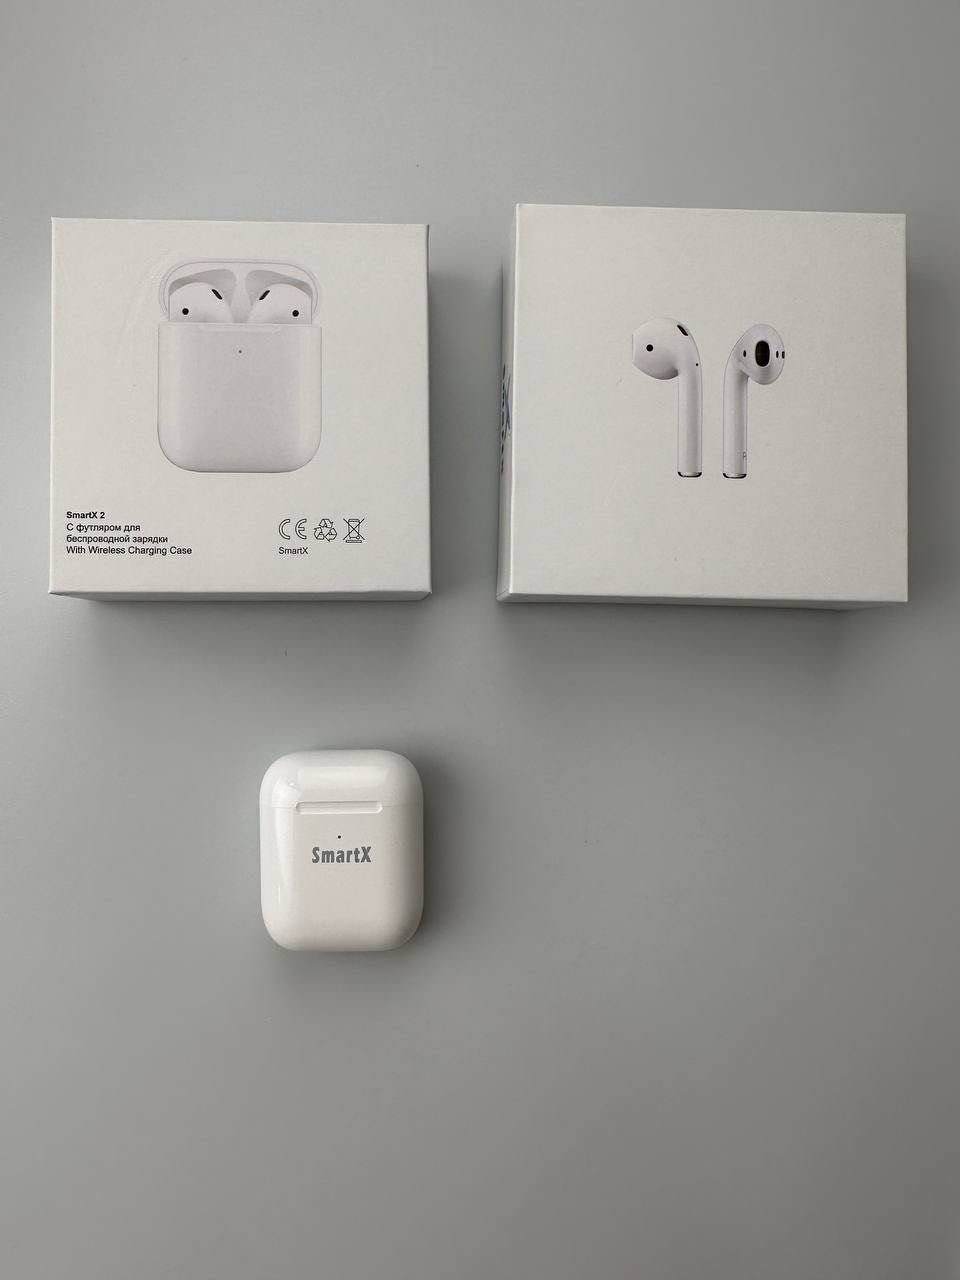 Бездротові Bluetooth-навушники SmartX 2 Luxury вкладиші